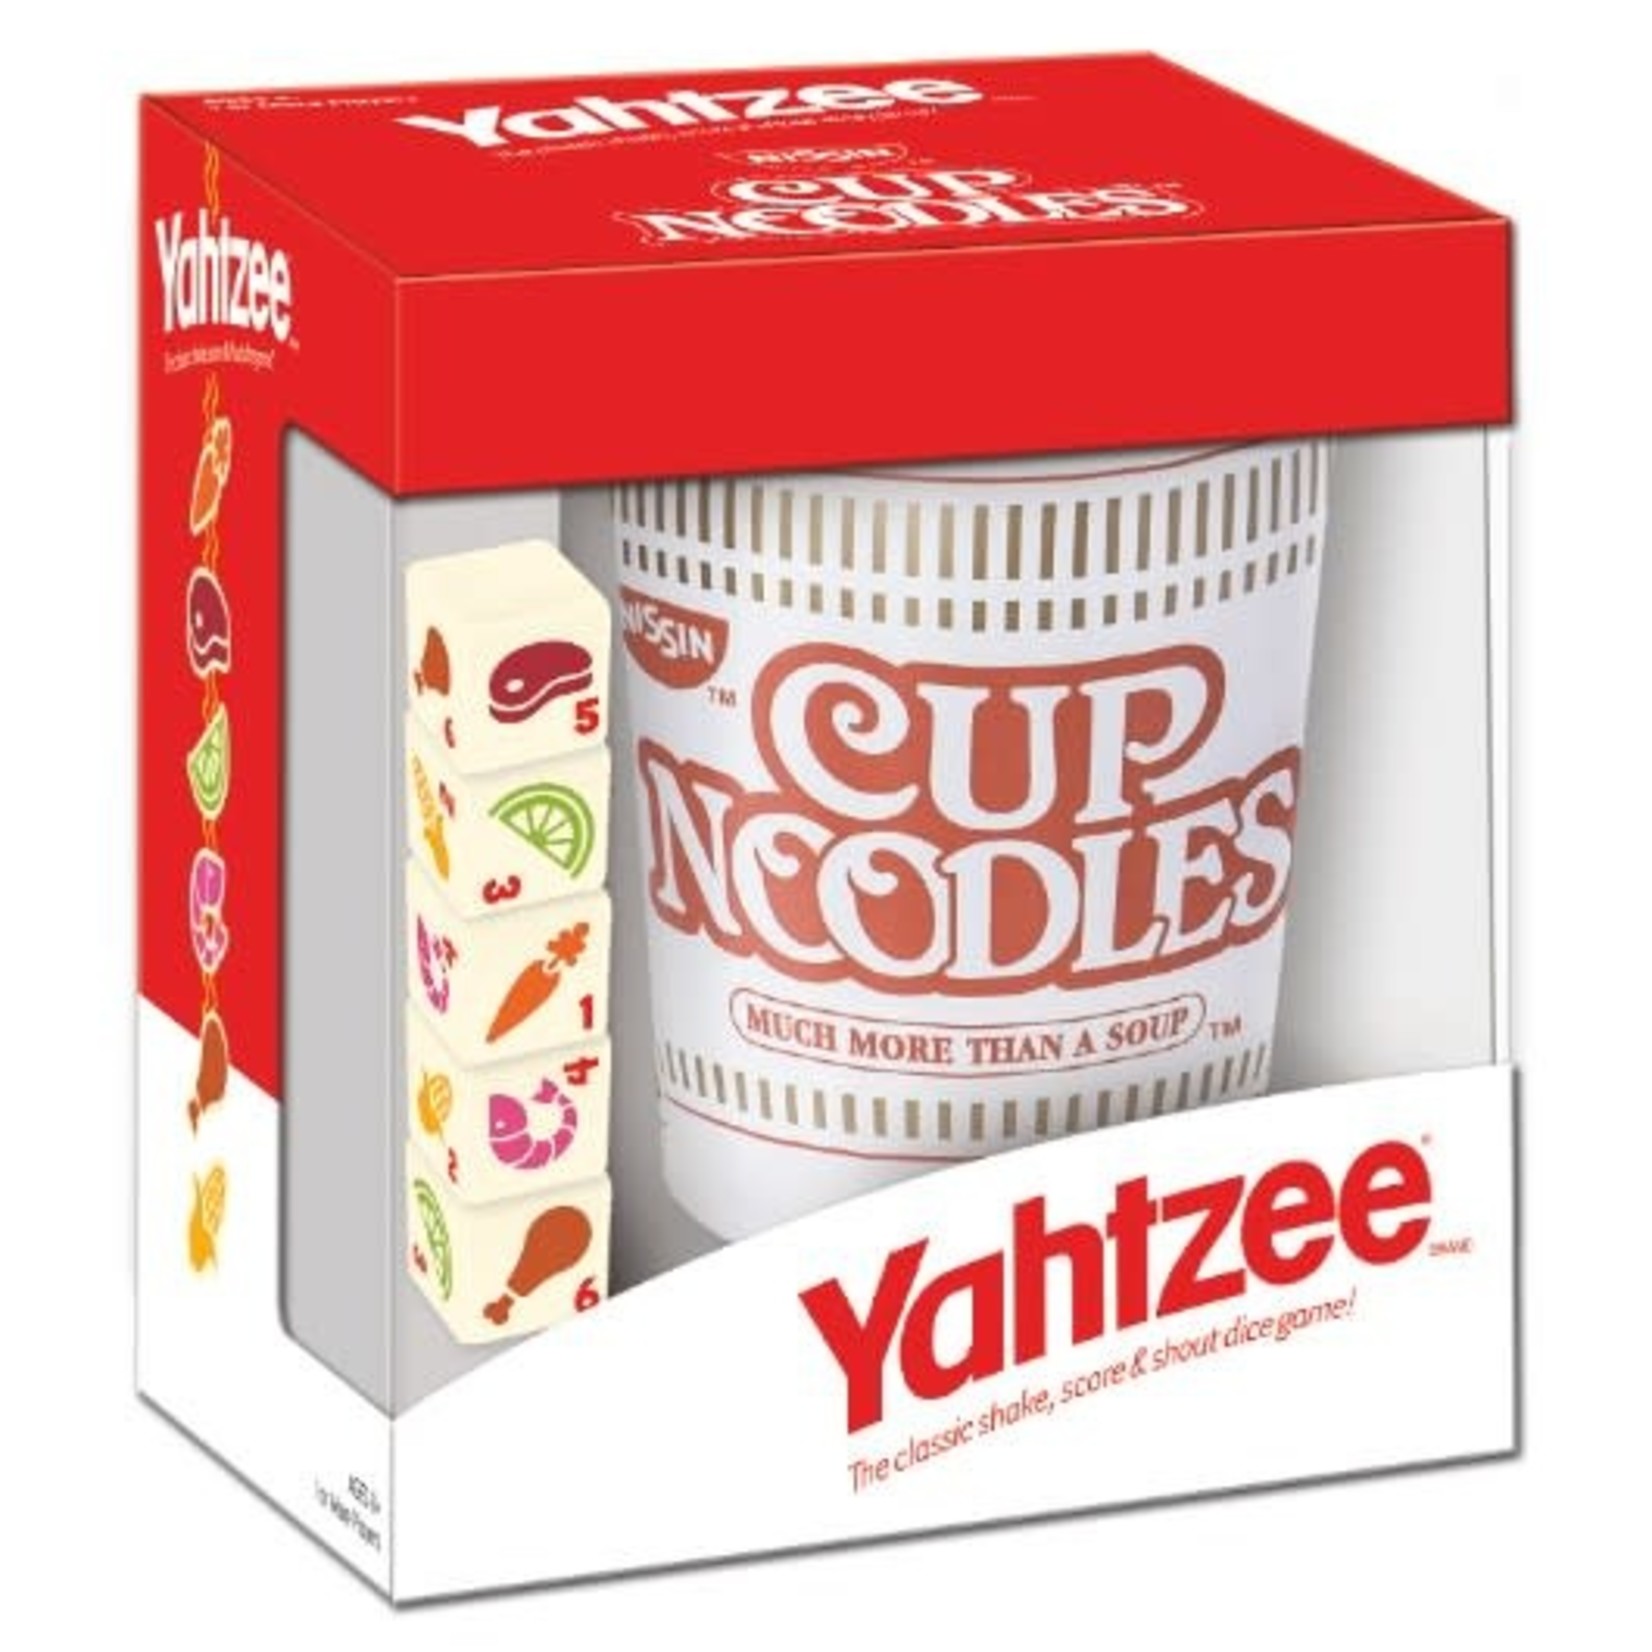 The Op Yahtzee: Cup Noodles